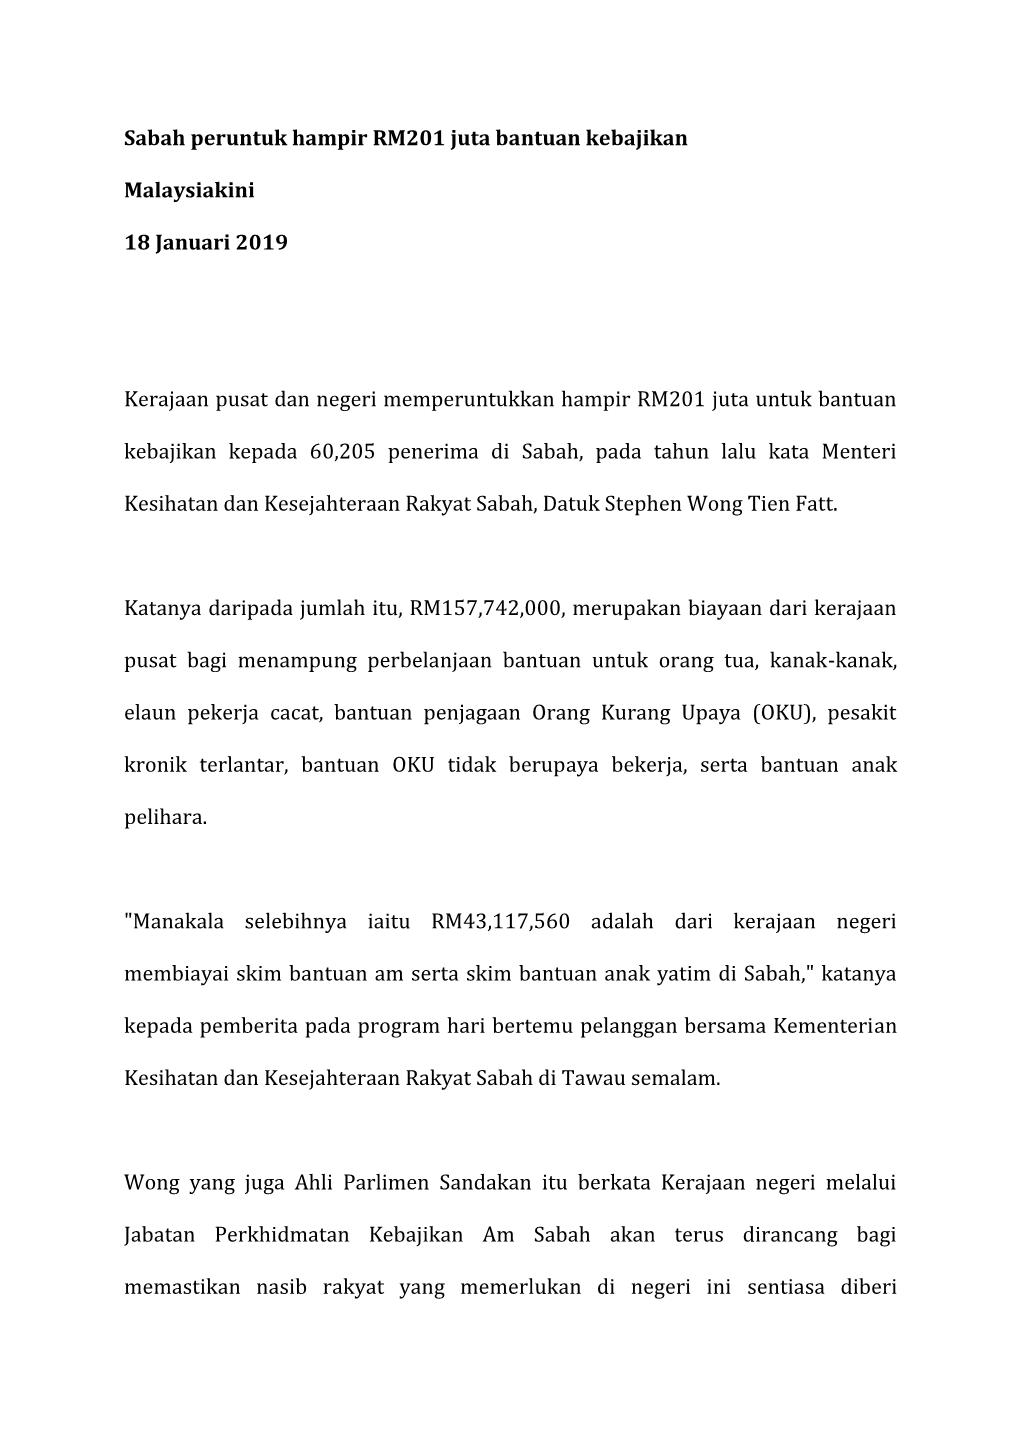 Sabah Peruntuk Hampir RM201 Juta Bantuan Kebajikan Malaysiakini 18 Januari 2019 Kerajaan Pusat Dan Negeri Memperuntukkan Hampir